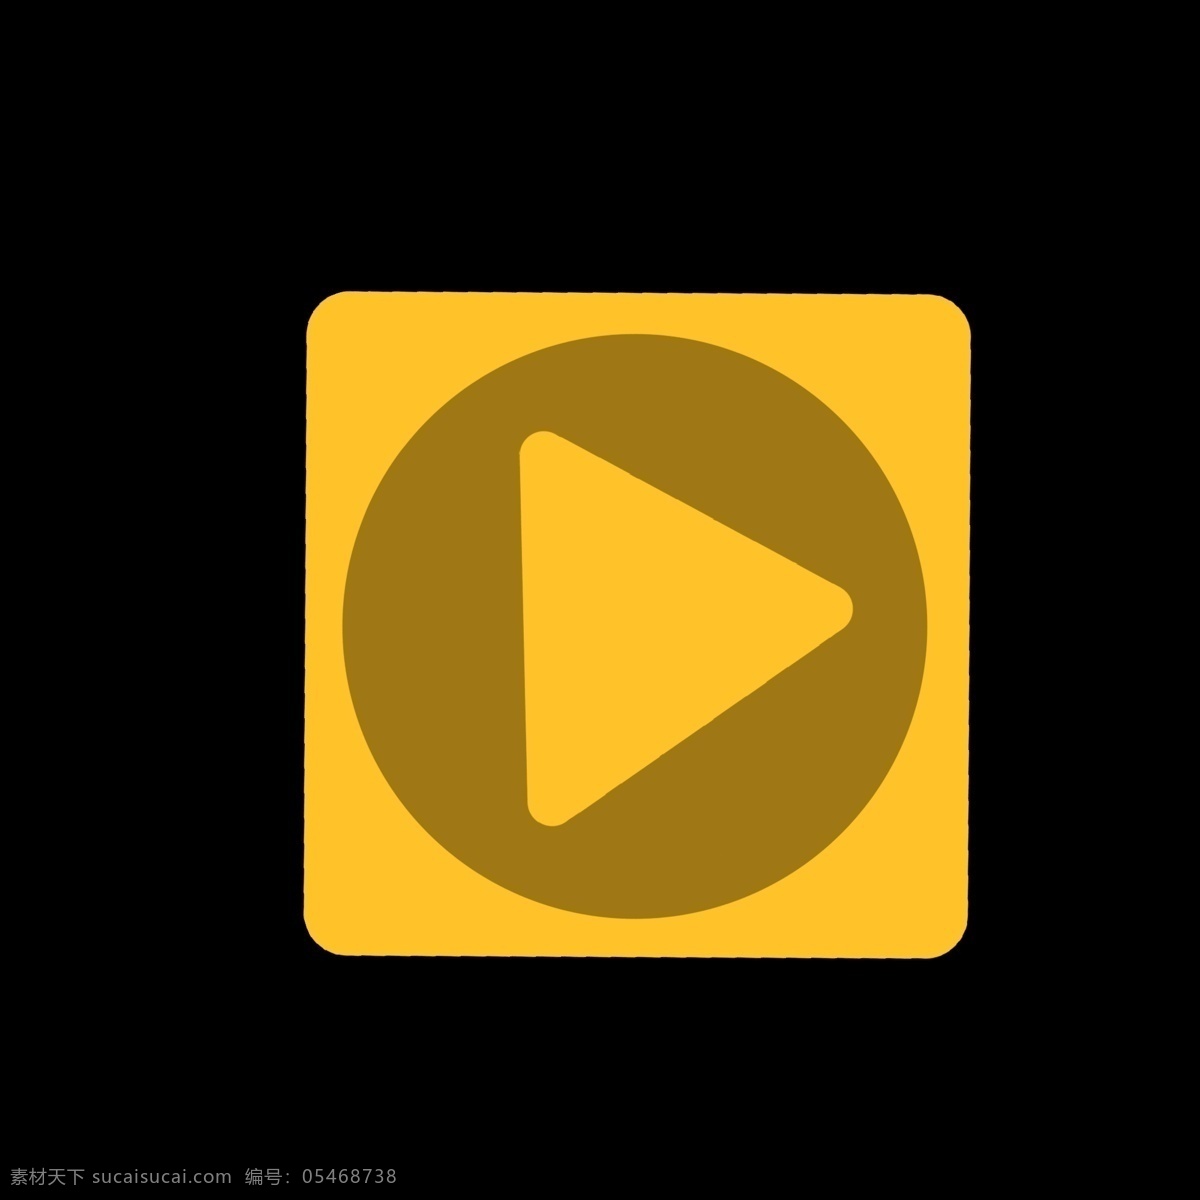 黄色 视频 播放 按钮 姜黄色 暖色 圆圈 三角形 卡通 ppt可用 简洁 简约 视频播放按钮